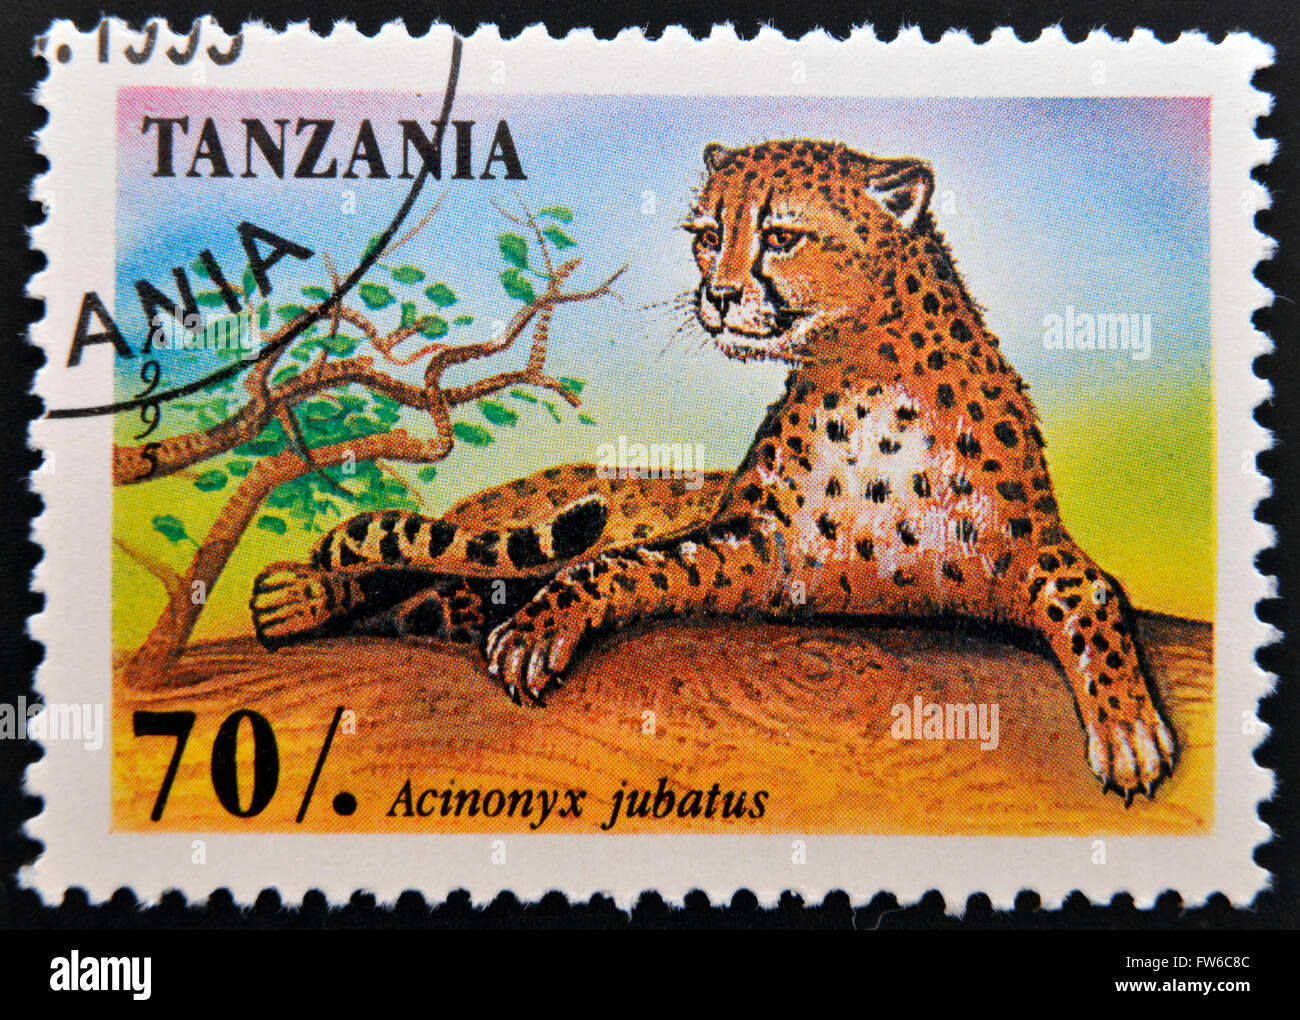 Tanzanie - circa 1995 : timbres en Tanzanie montre un animal d'Afrique - Leopard avec l'inscription 'Acinonyx jubatus', cria Banque D'Images